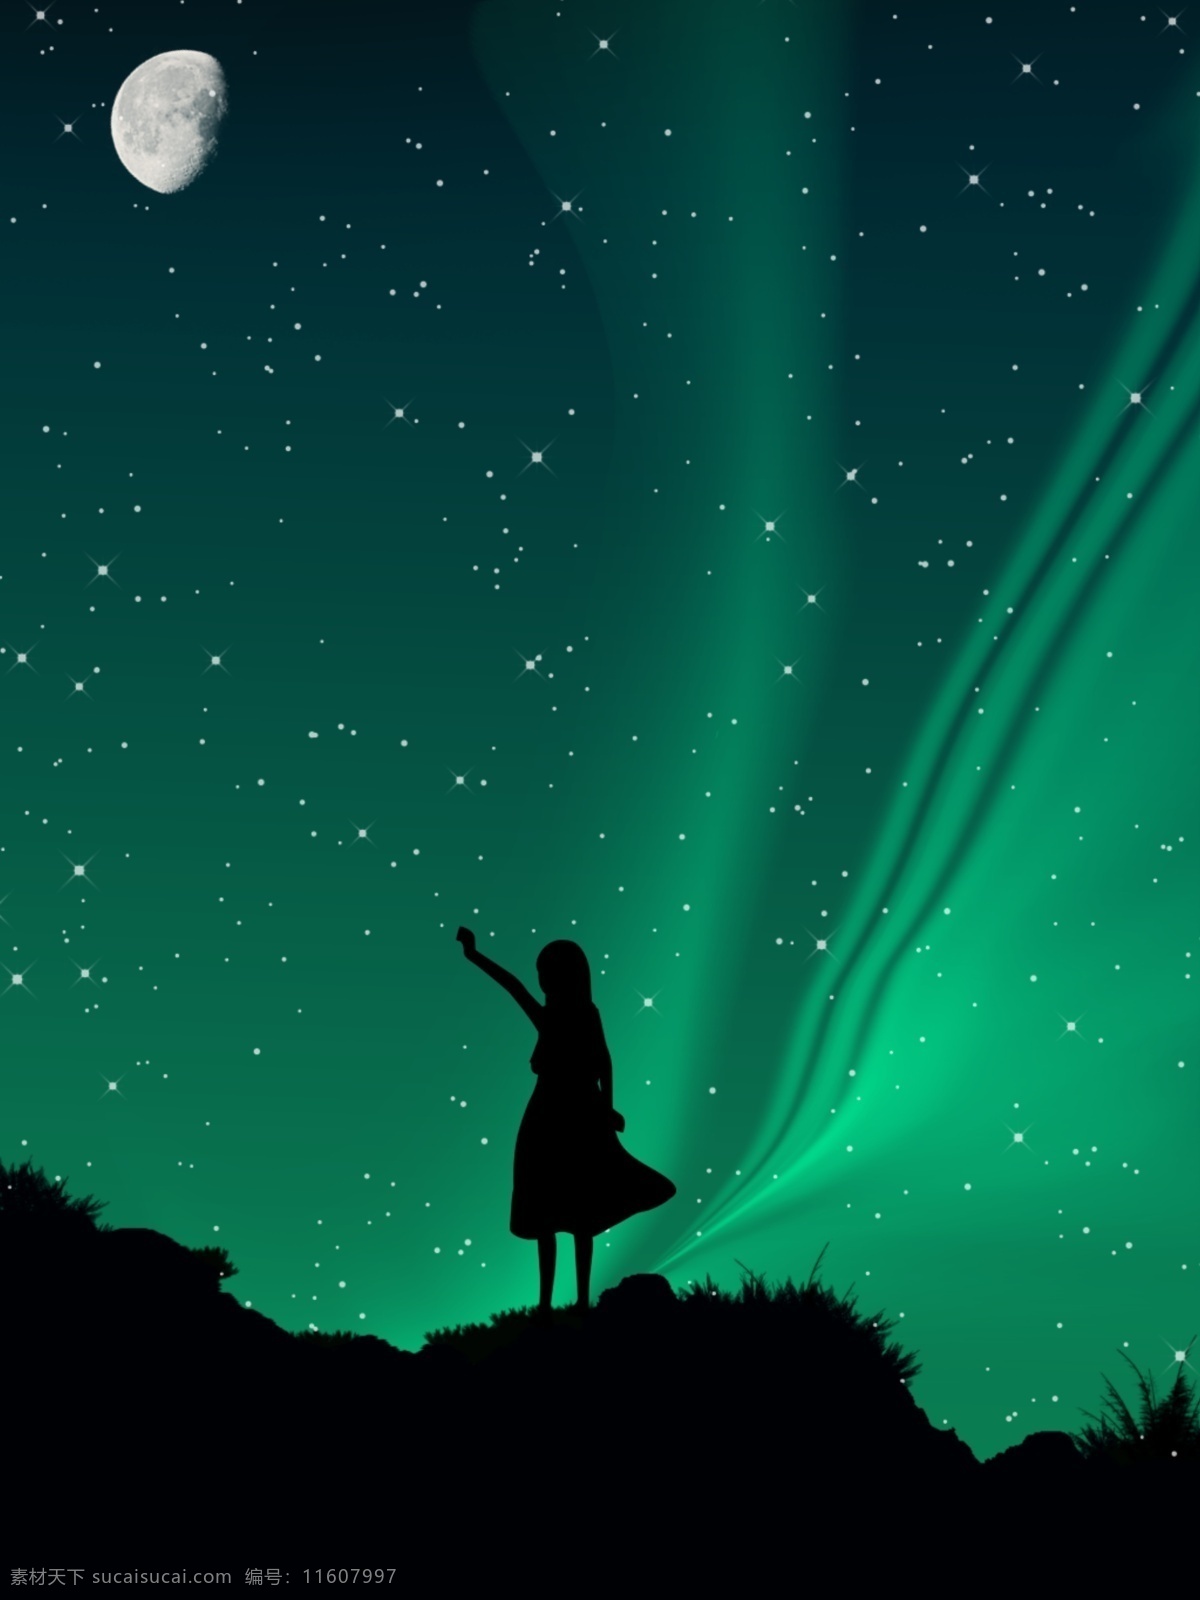 全 原创 星空 极光 人影 背景 星空背景 唯美 浪漫背景 星星 绿色 手绘 夜空 背影